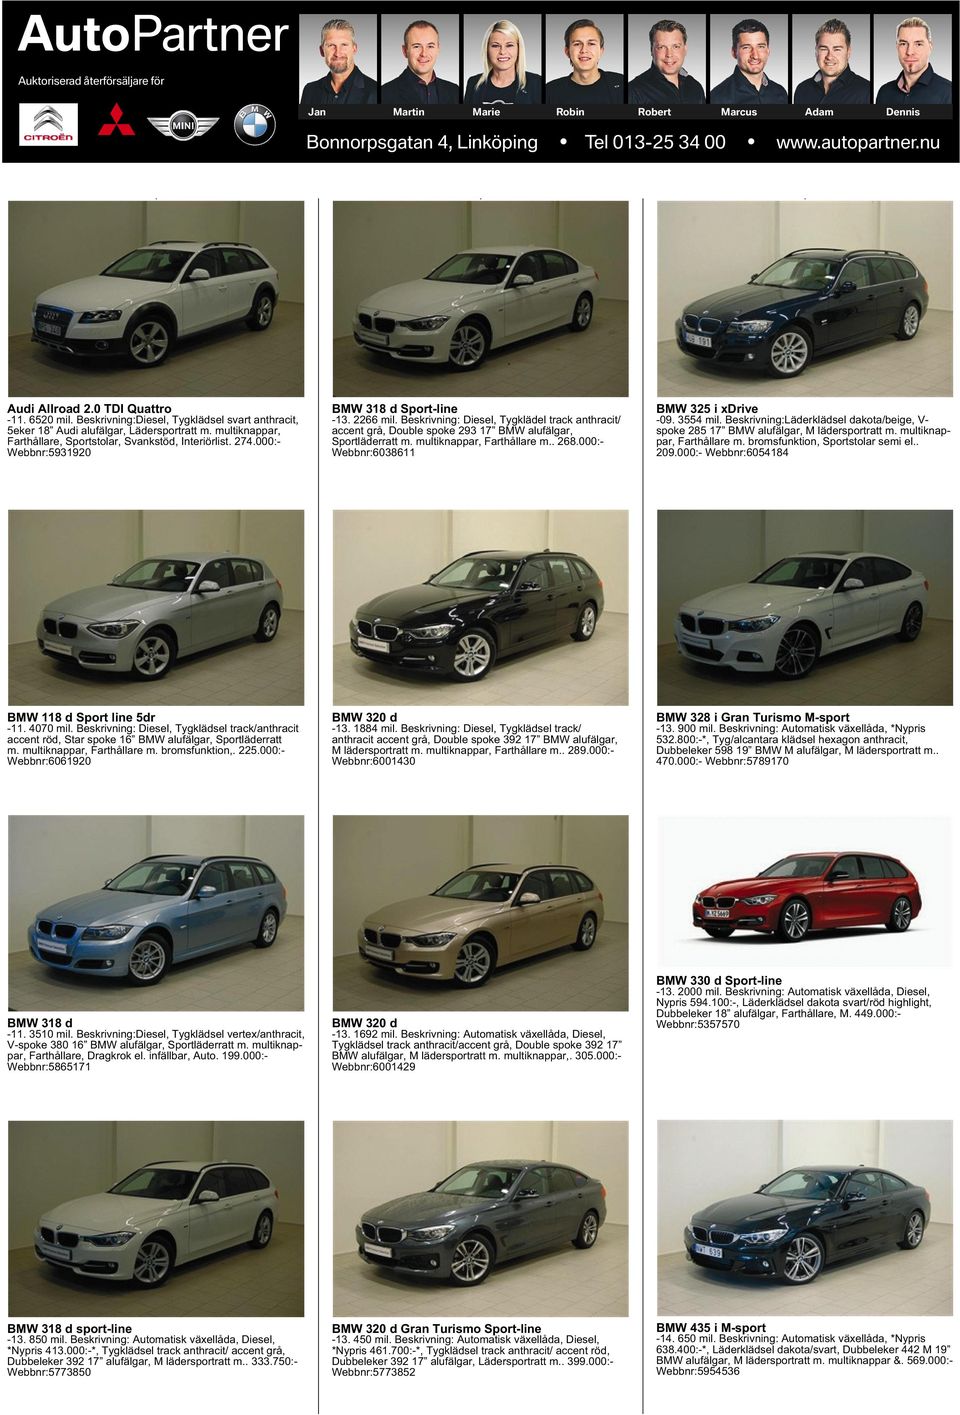 Beskrivning: Diesel, Tygklädel track anthracit/ accent grå, Double spoke 293 17 BMW alufälgar, Sportläderratt m. multiknappar, Farthållare m.. 268.000:- Webbnr:6038611 BMW 325 i xdrive -09. 3554 mil.